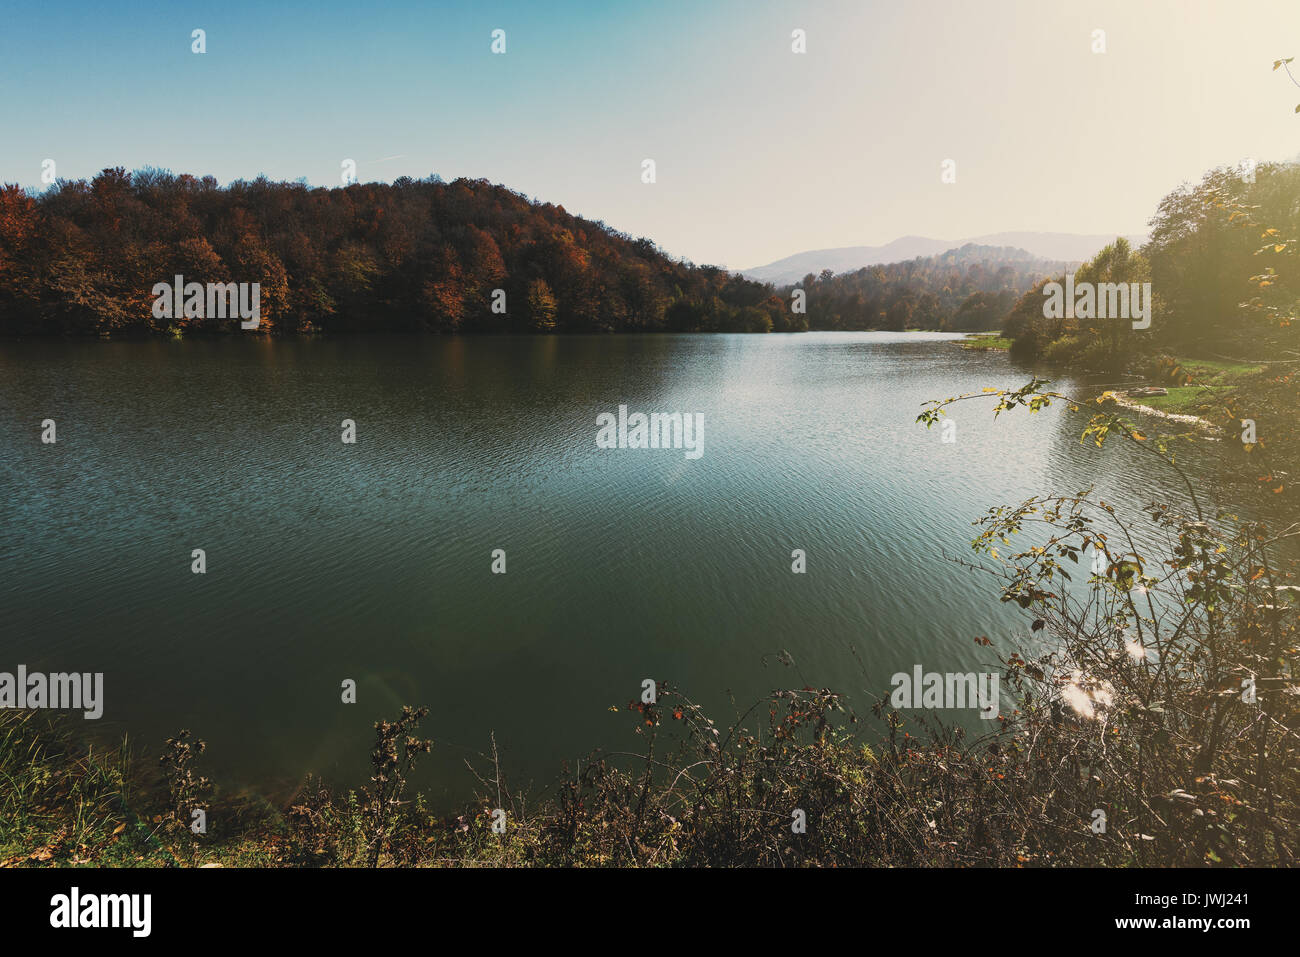 High mountain lake in autumn time Stock Photo